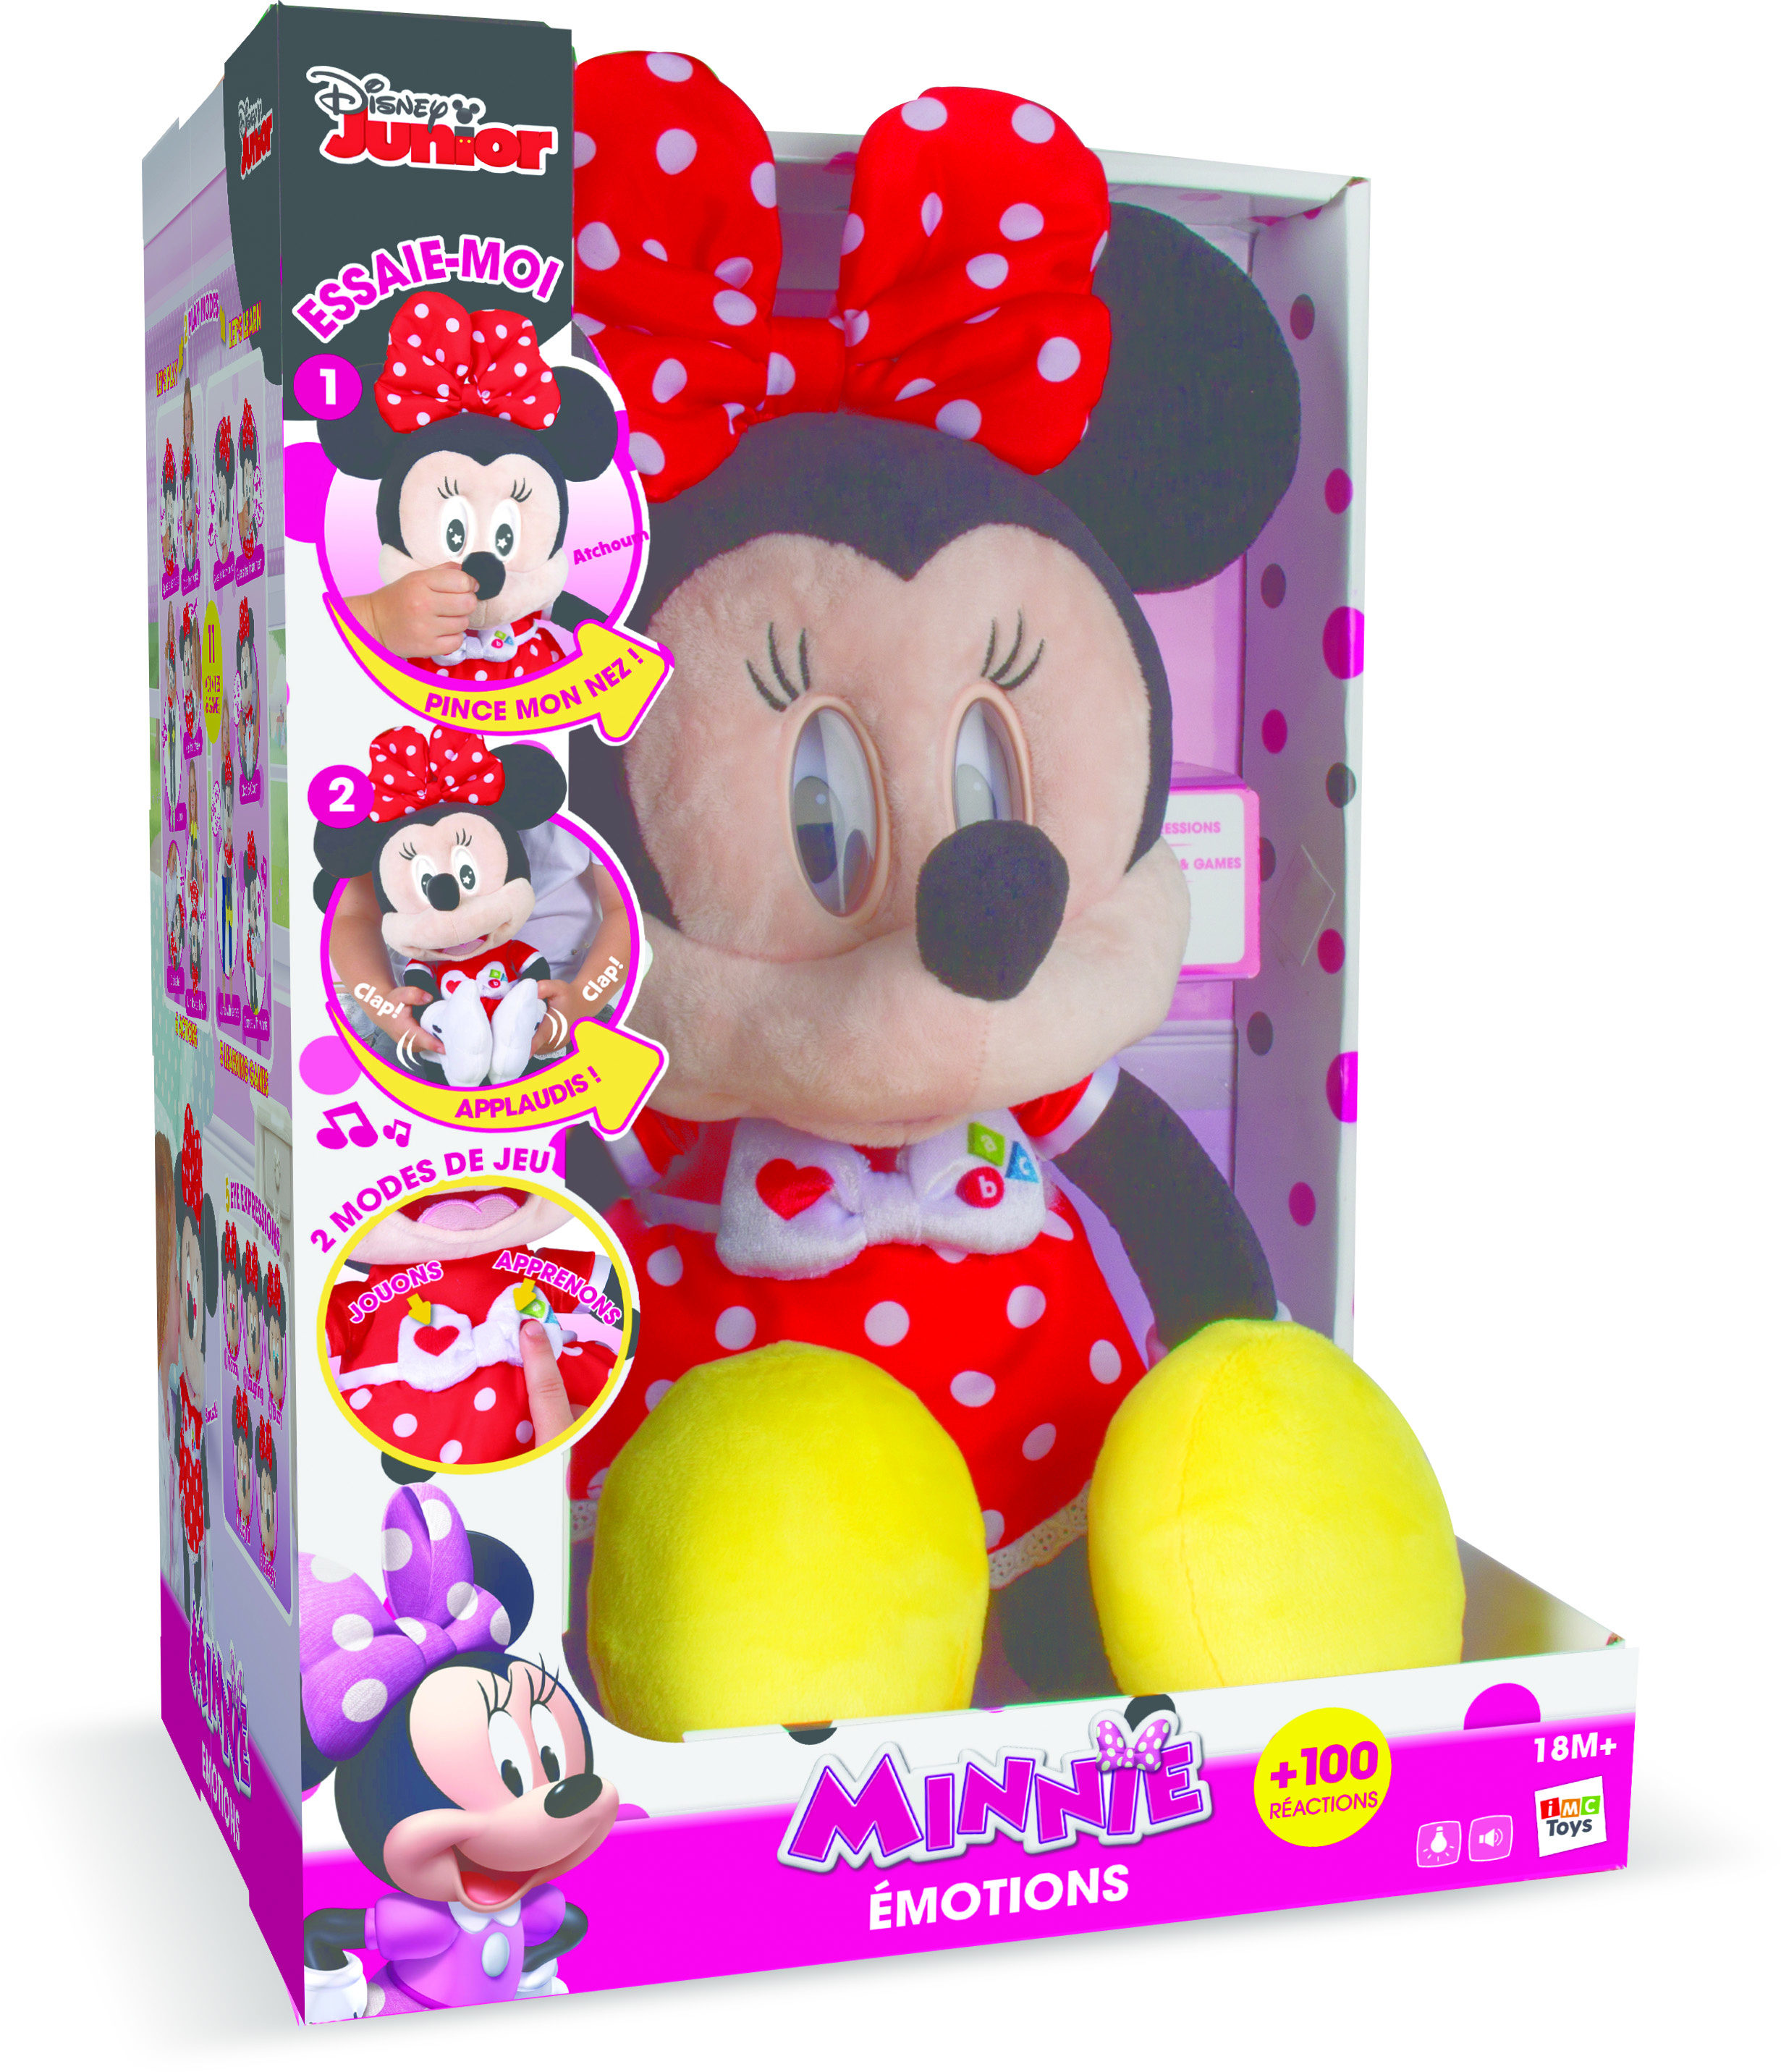 Minnie Emotion IMC Package.jpg